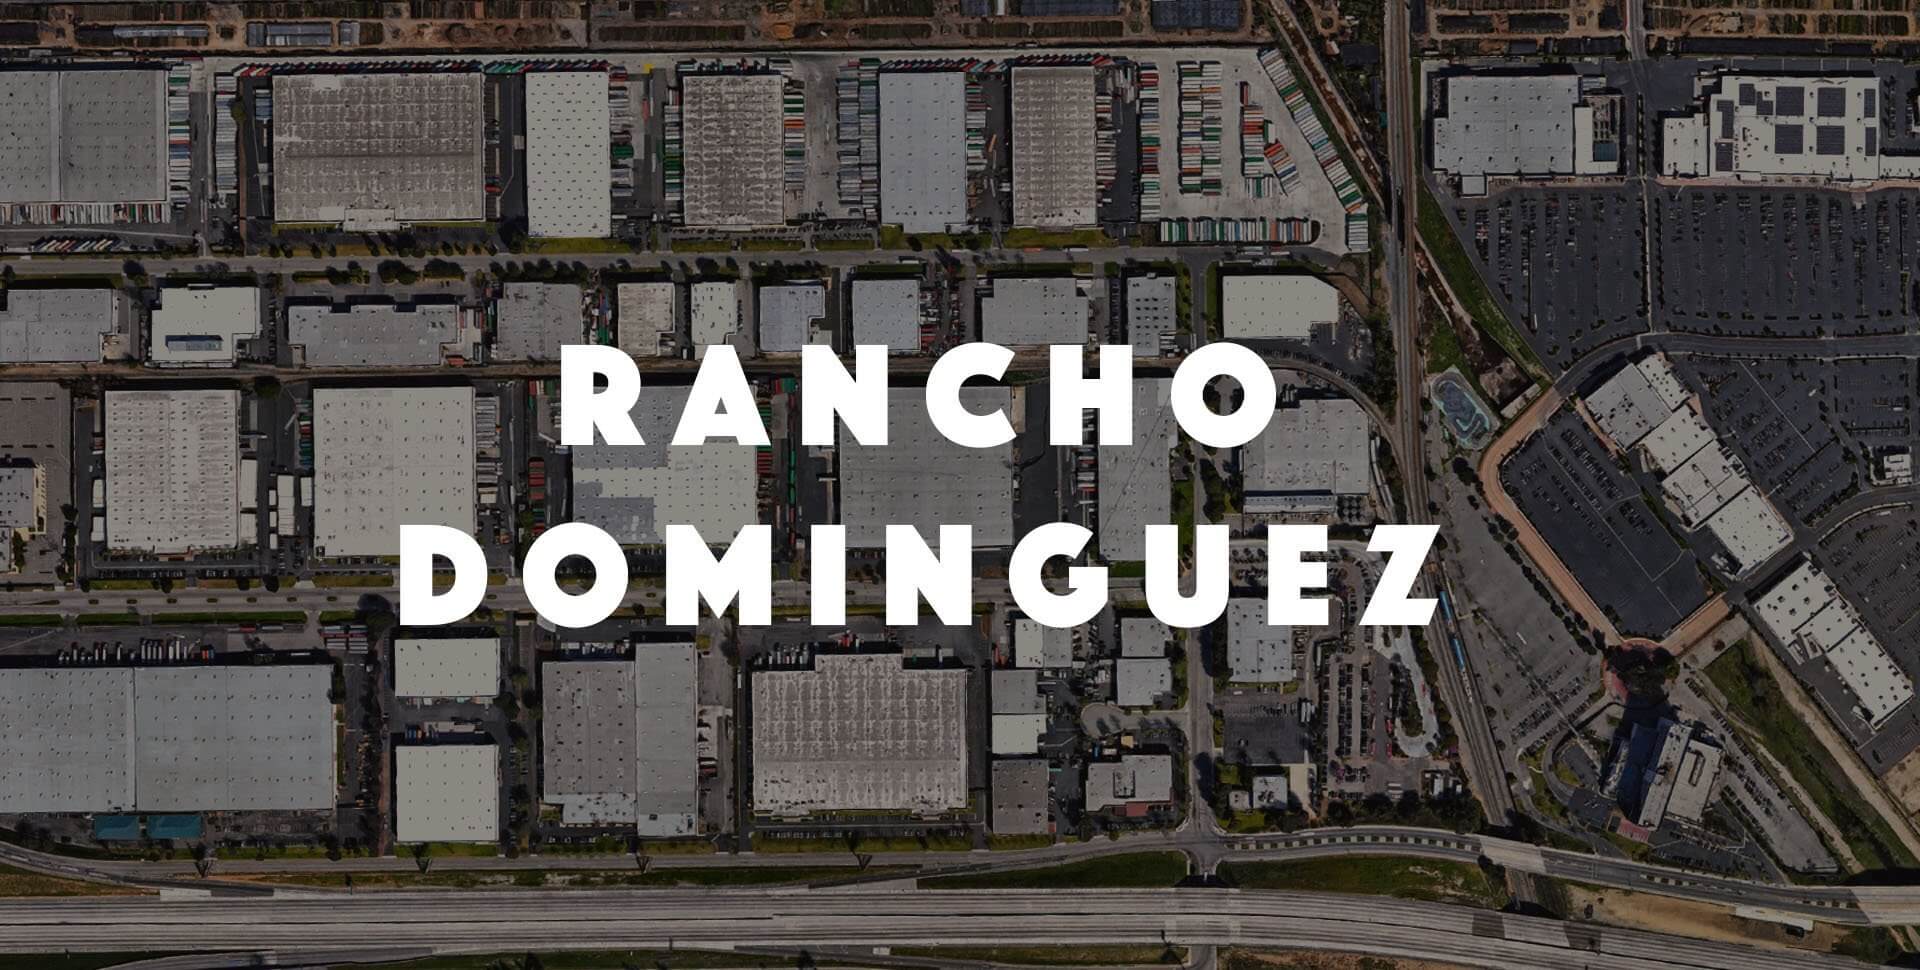 1987 – Growing into Rancho Dominguez